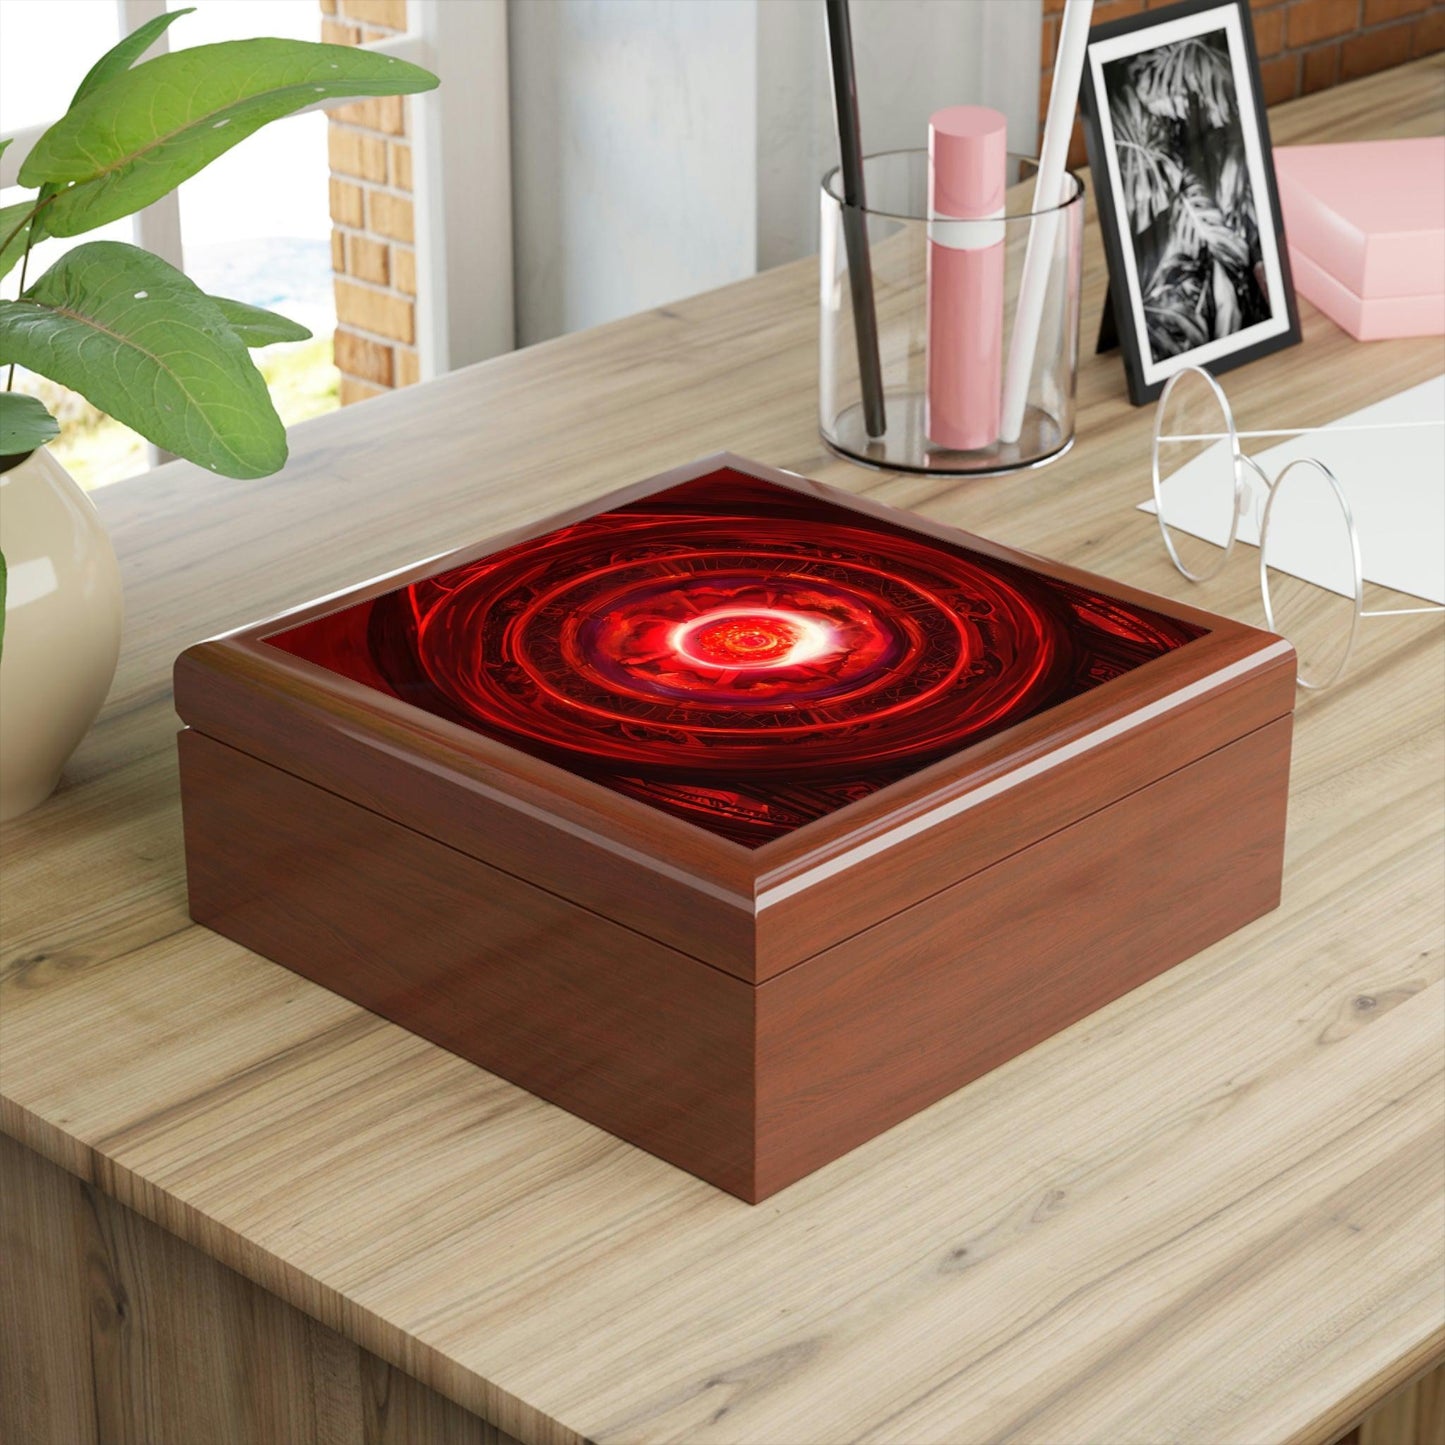 Red-Energy-Portal-Jewelry-Box-untuk-menyimpan-azimat-dan-cincin-5